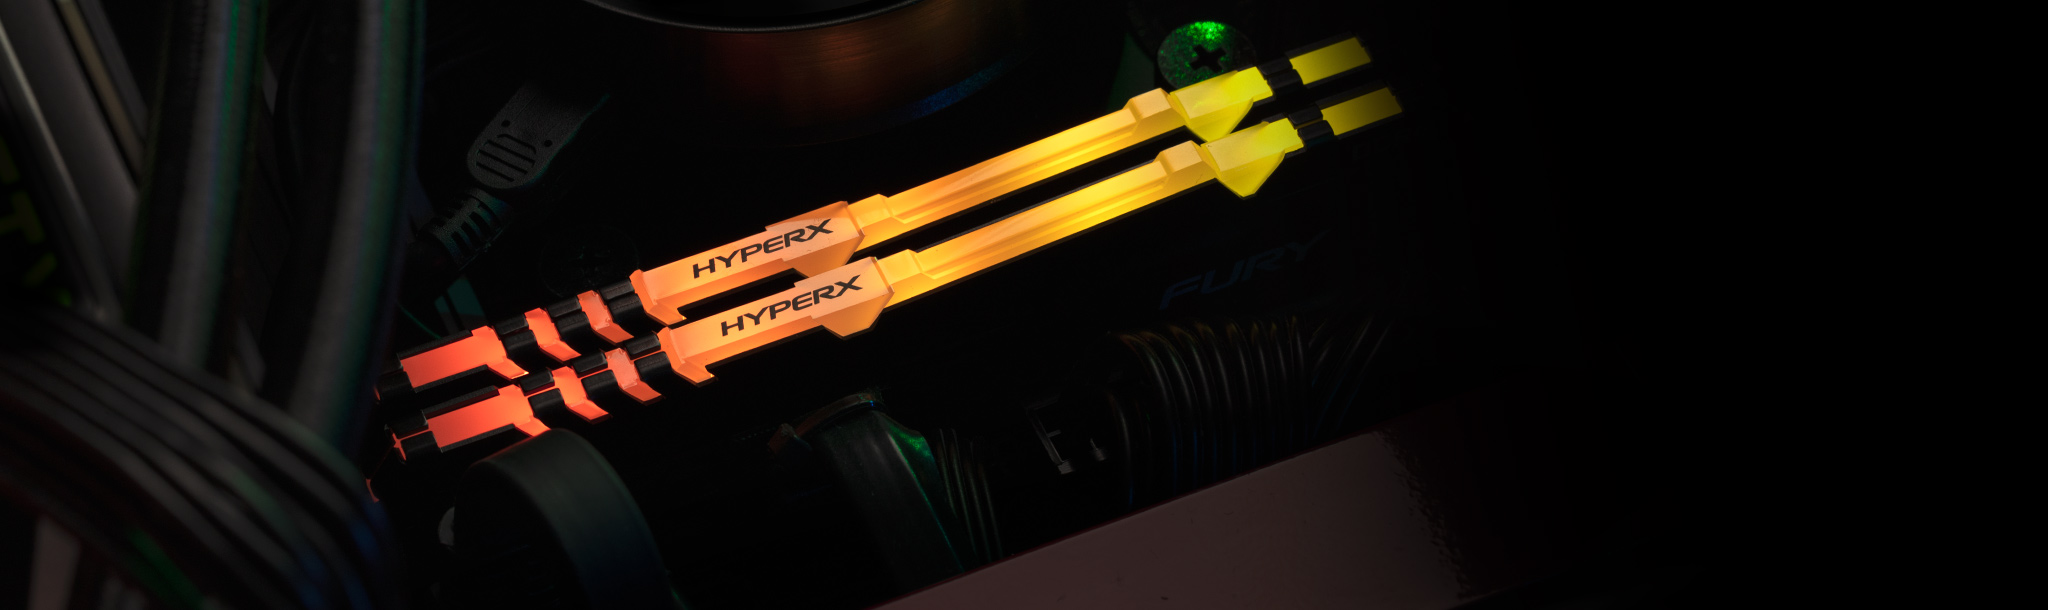 PC desktop gaming dengan Memori HyperX RGB di dalamnya.